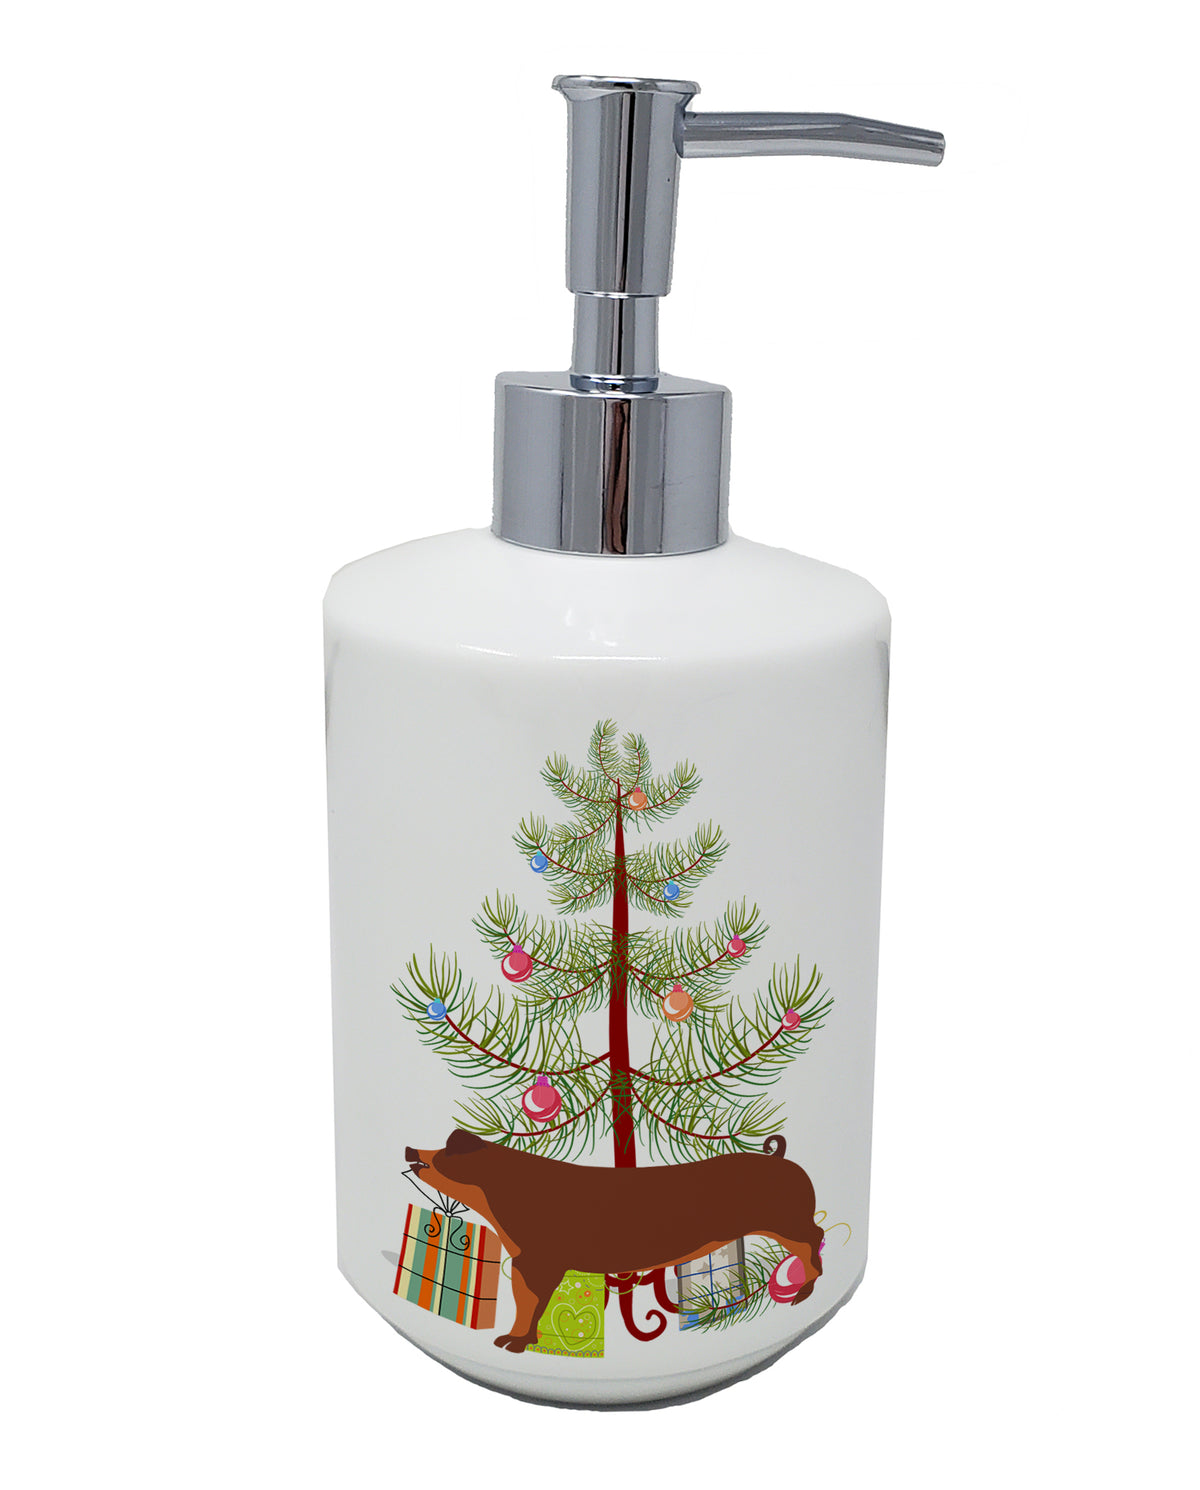 Buy this Duroc Pig Christmas Ceramic Soap Dispenser